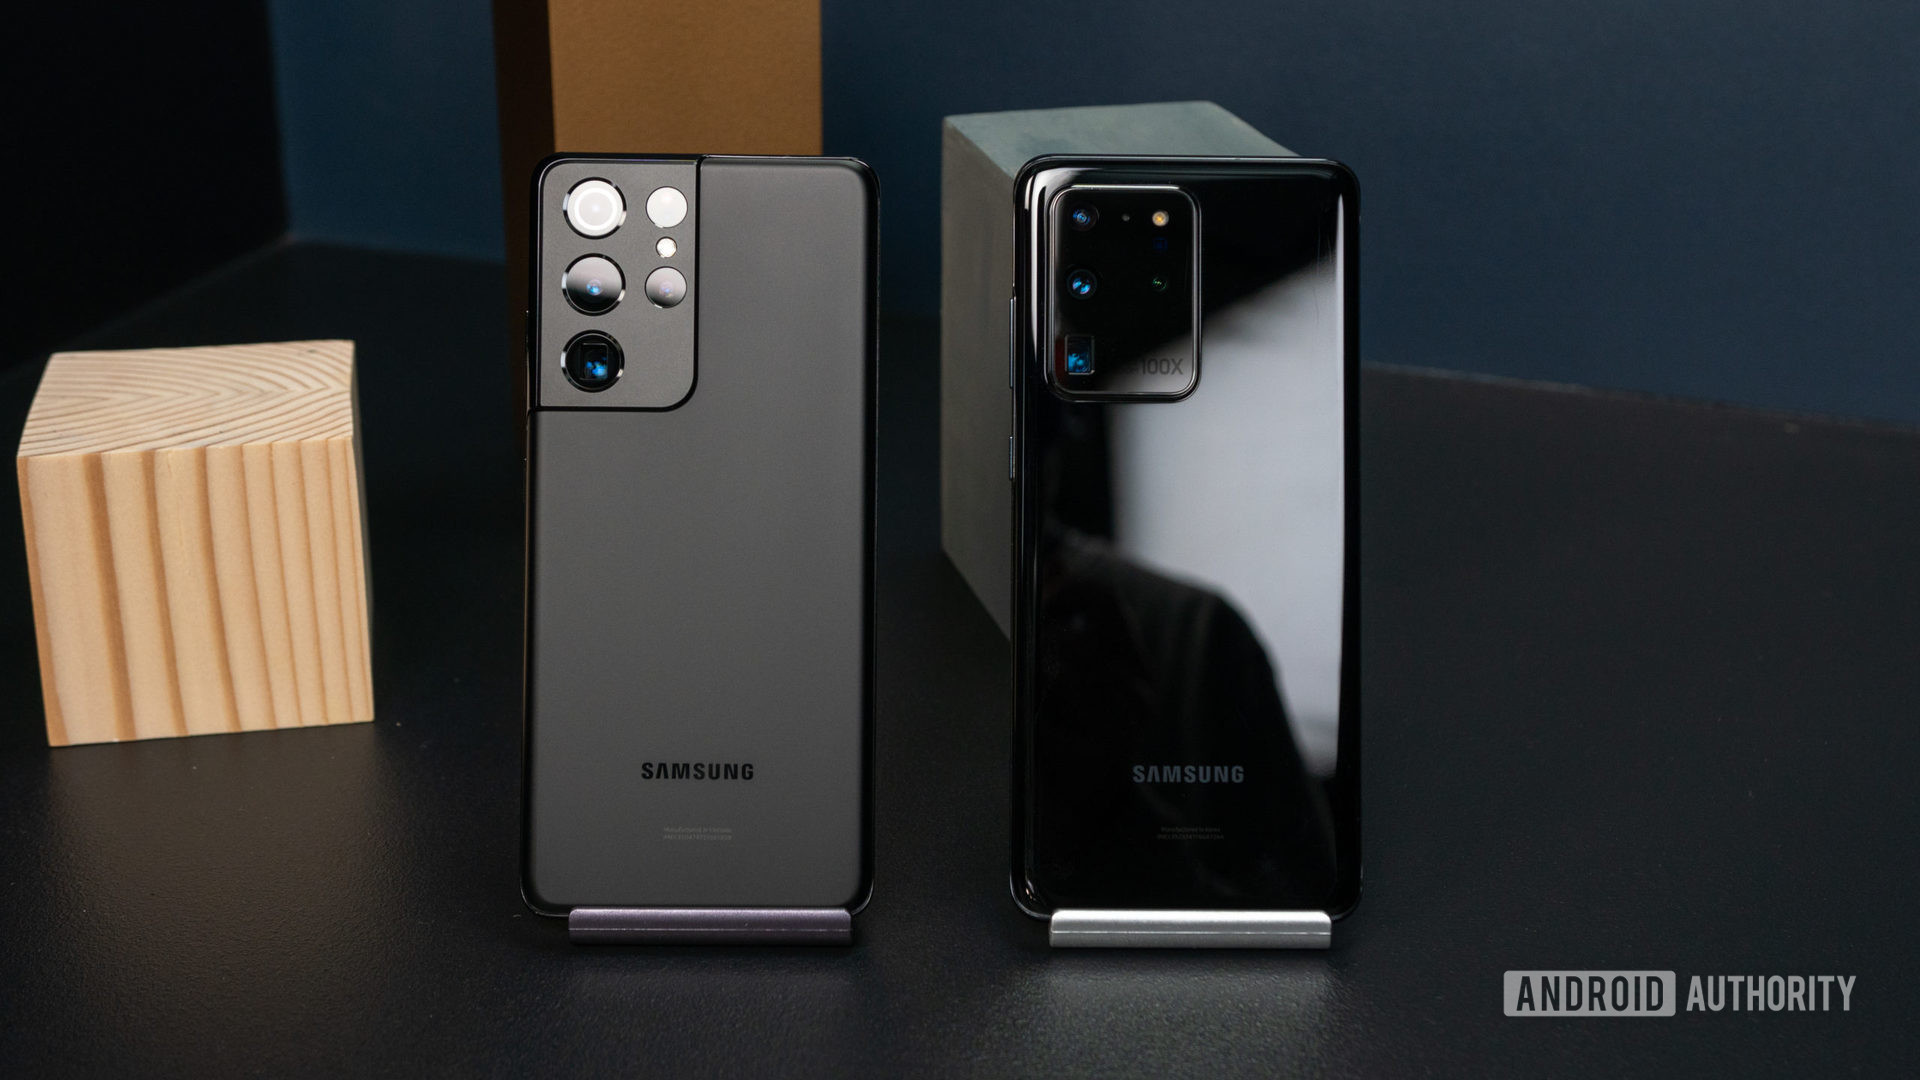 Samsung Galaxy S21 Ultra vs Samsung Galaxy S20 Ultra